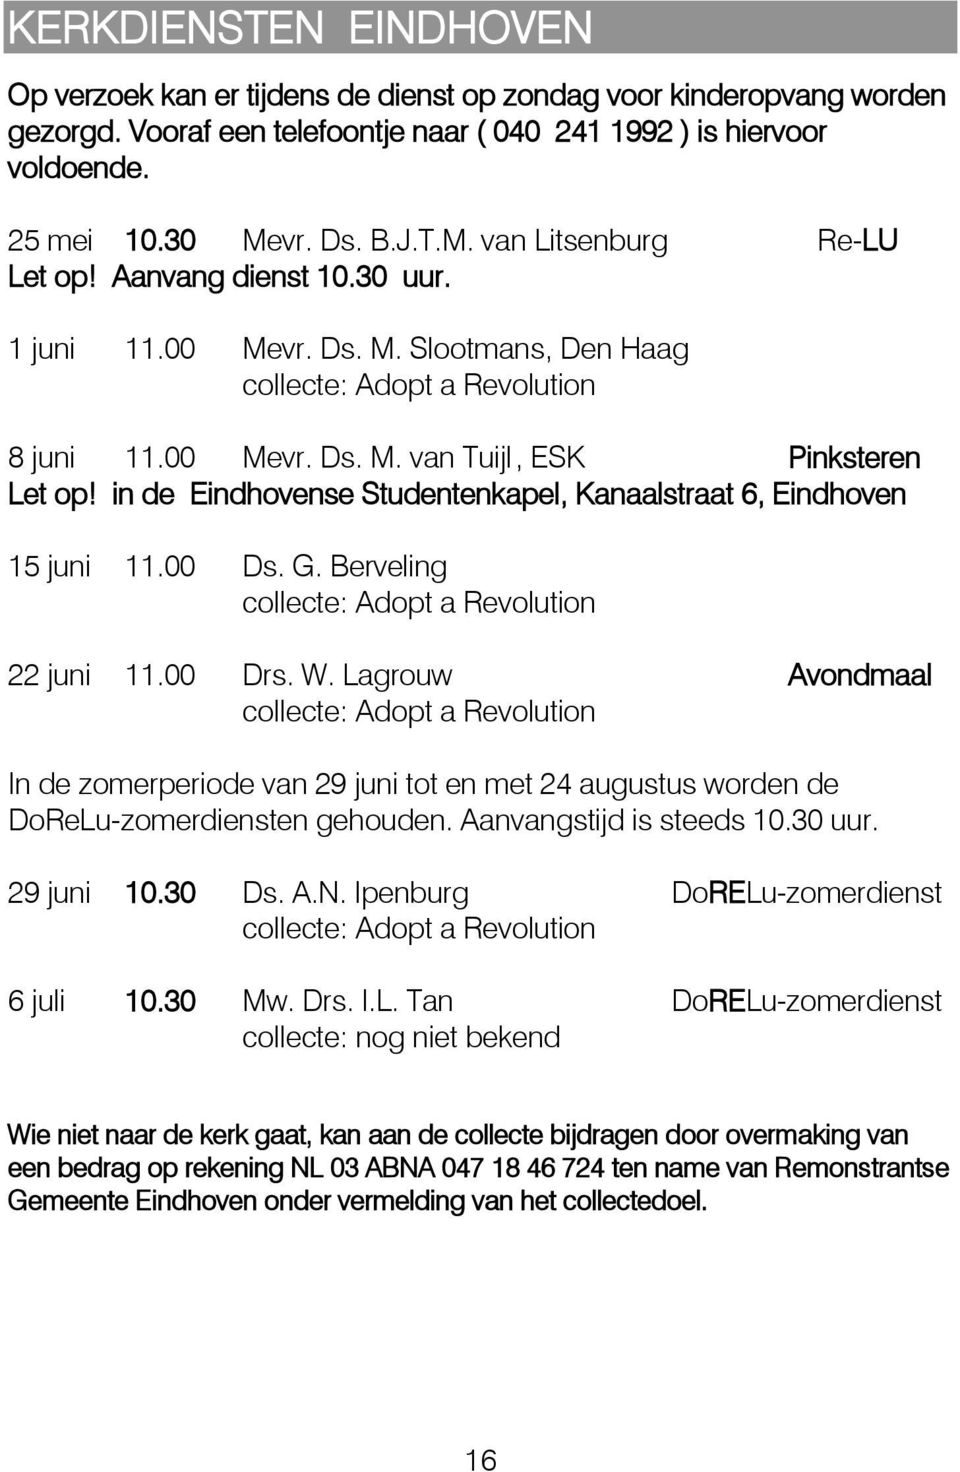 in de Eindhovense Studentenkapel, Kanaalstraat 6, Eindhoven 15 juni 11.00 Ds. G. Berveling collecte: Adopt a Revolution 22 juni 11.00 Drs. W.